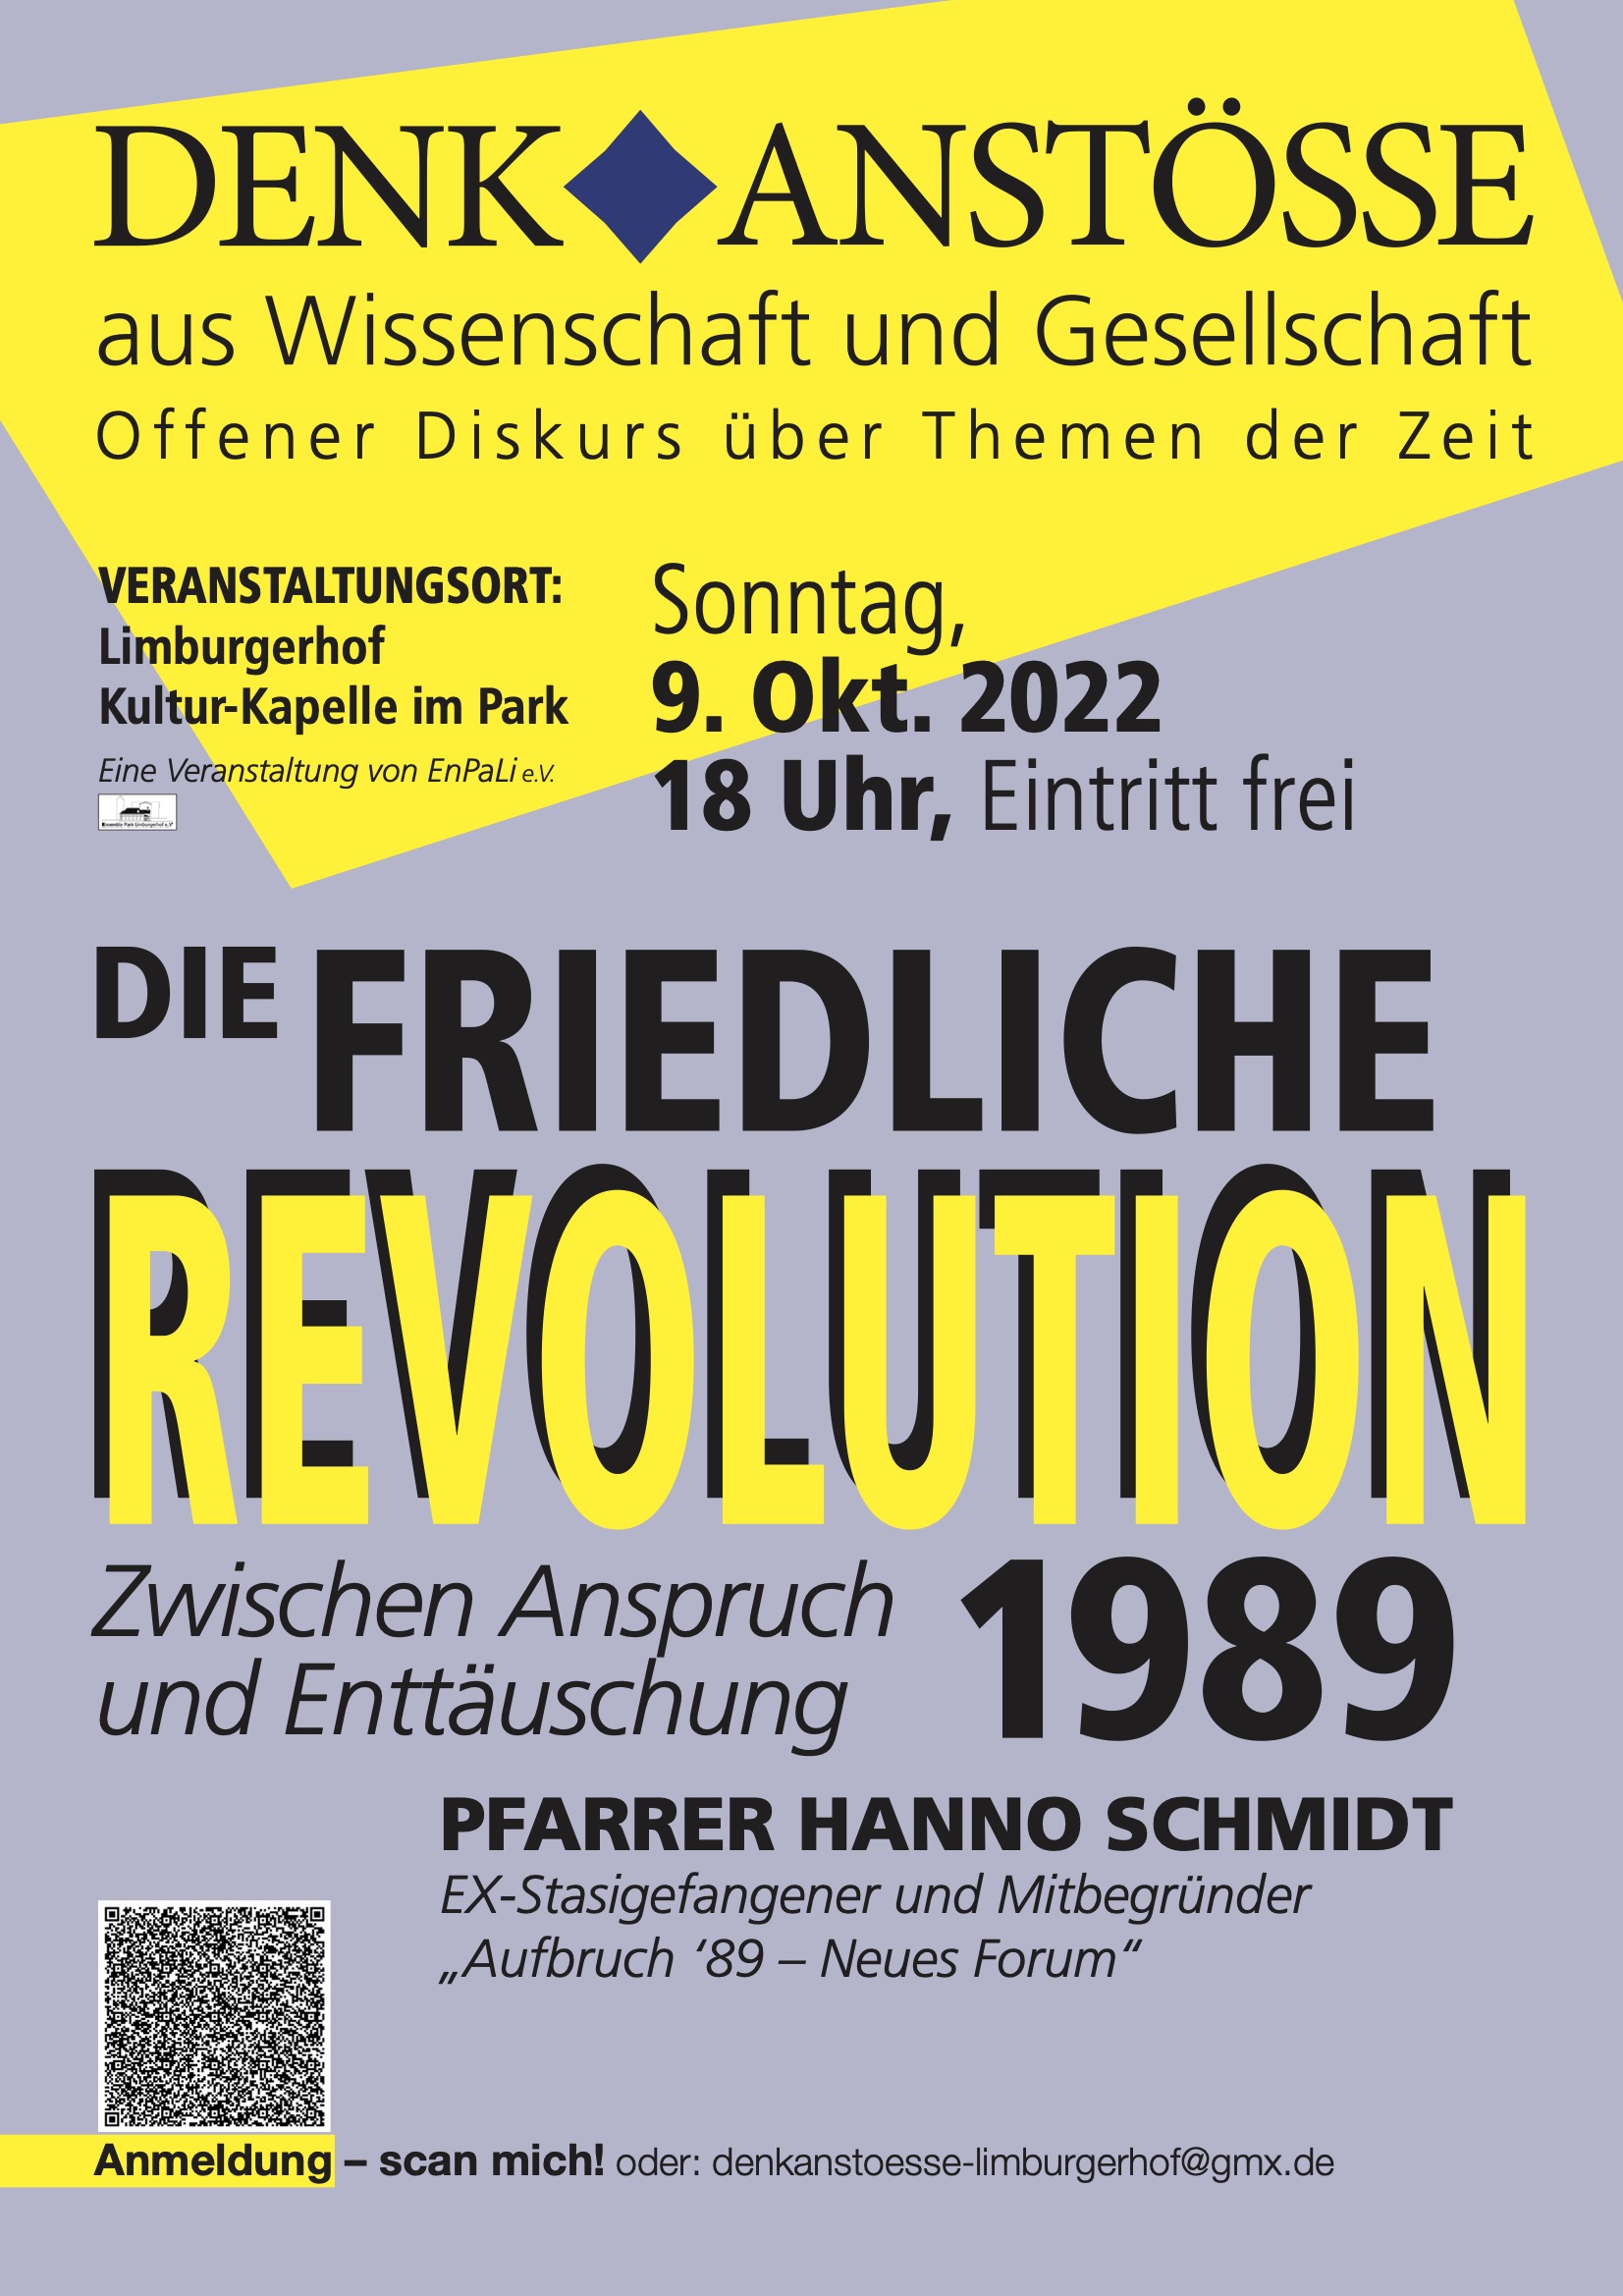 Die friedliche Revolution 1989 - Zwischen Anspruch und Enttäuschung